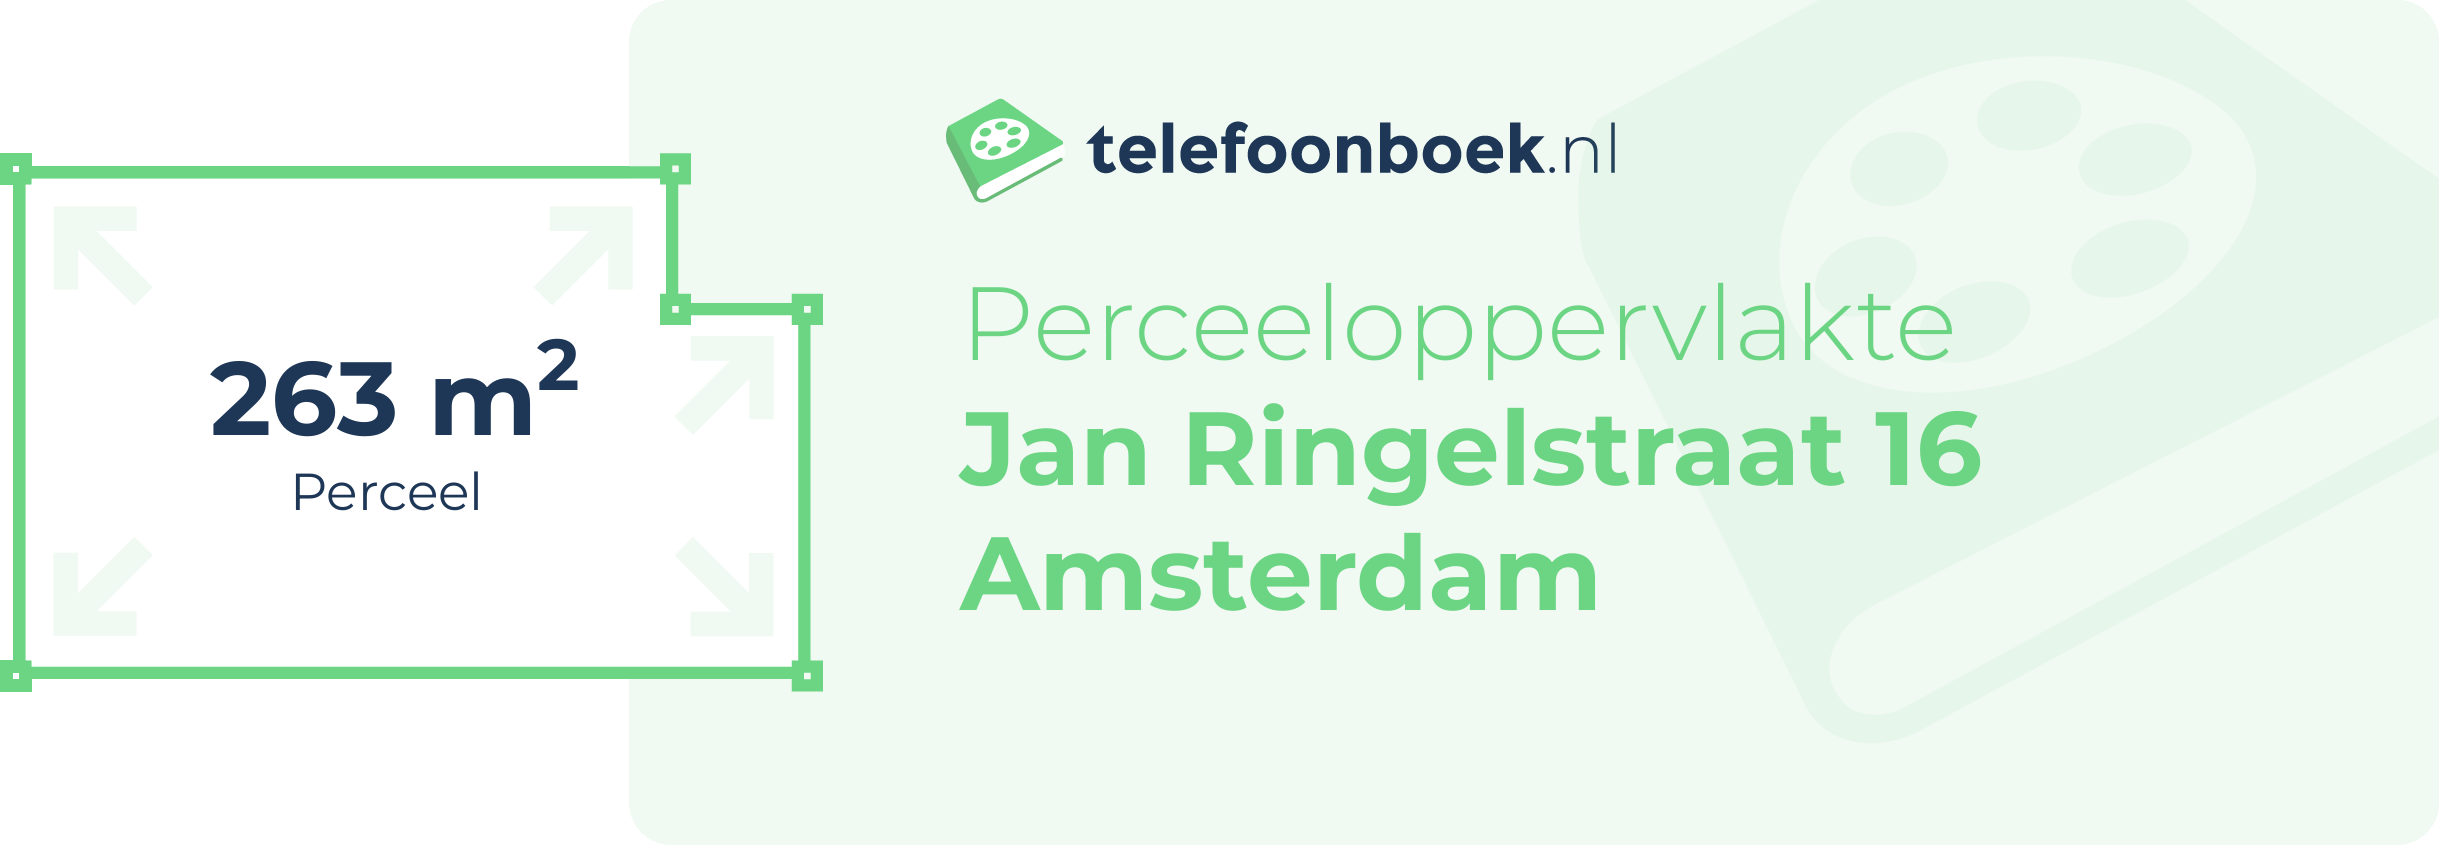 Perceeloppervlakte Jan Ringelstraat 16 Amsterdam